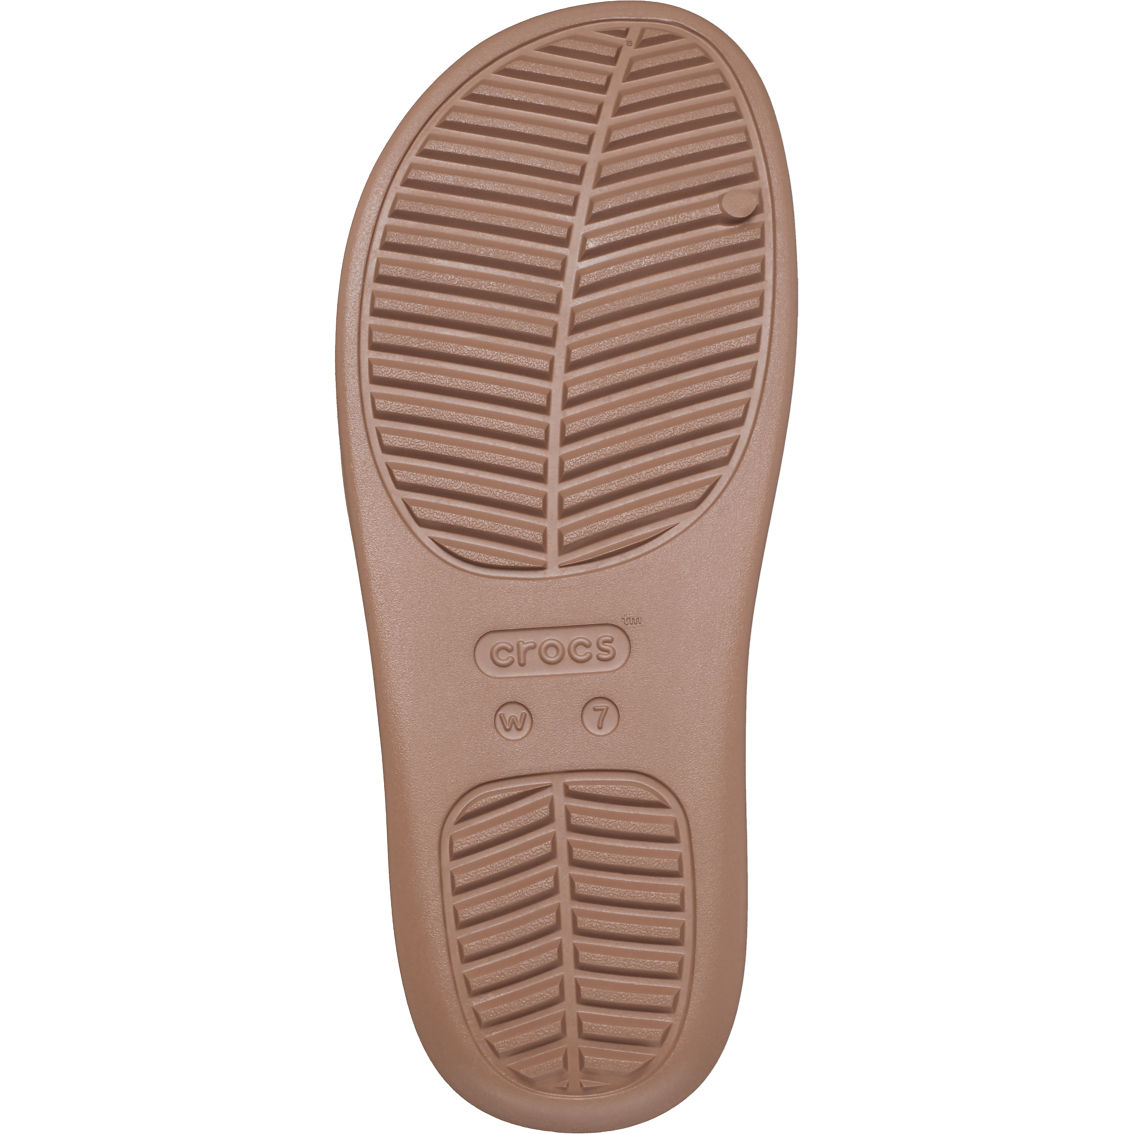 Crocs Women's Getaway H Strap Sandals - Image 5 of 6